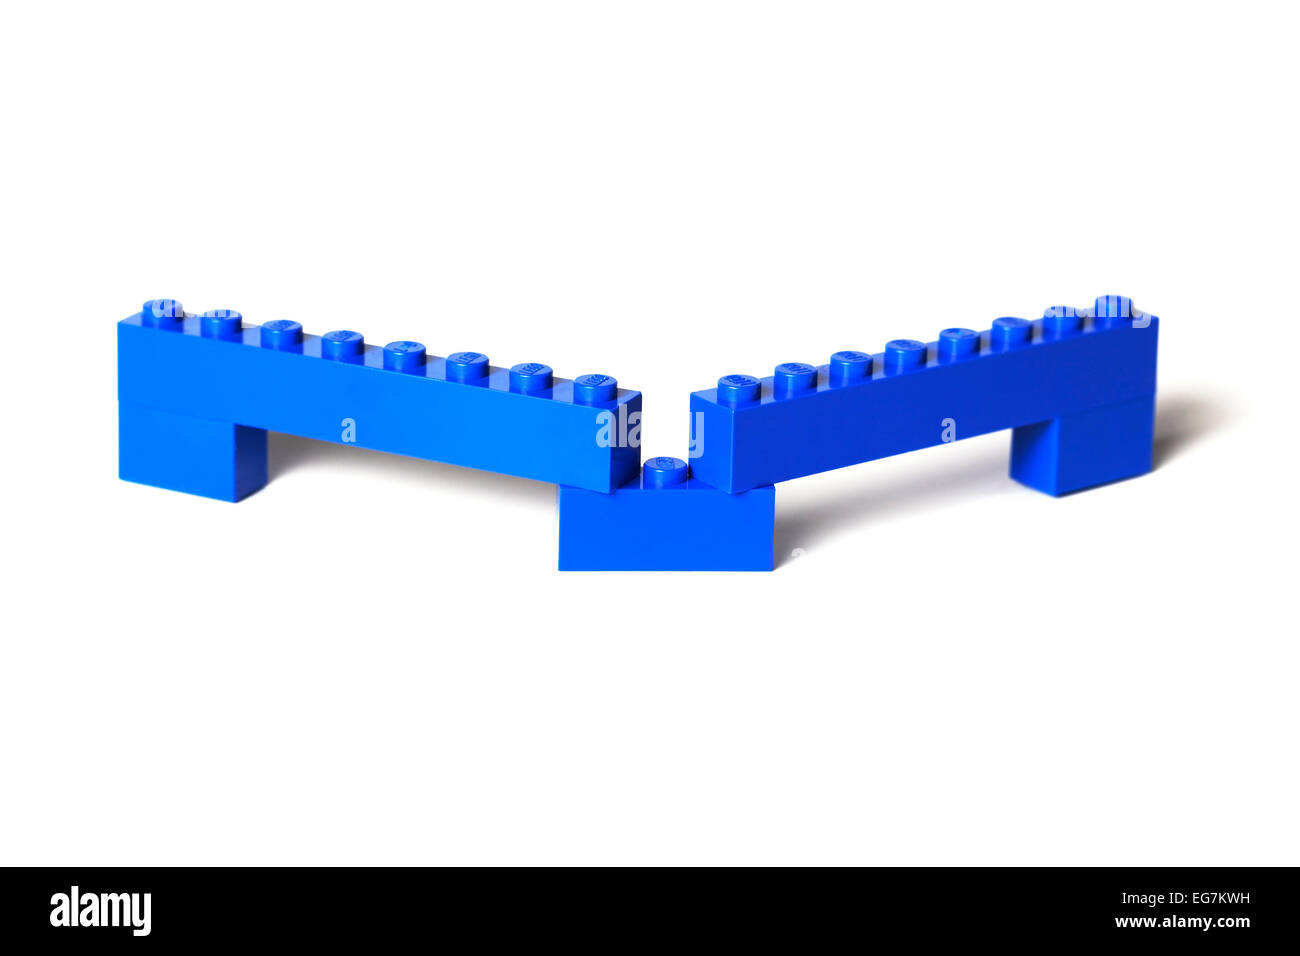 Une construction en briques Lego, pont, viaduc, barrière, etc. des briques Lego bleu sur blanc. Banque D'Images